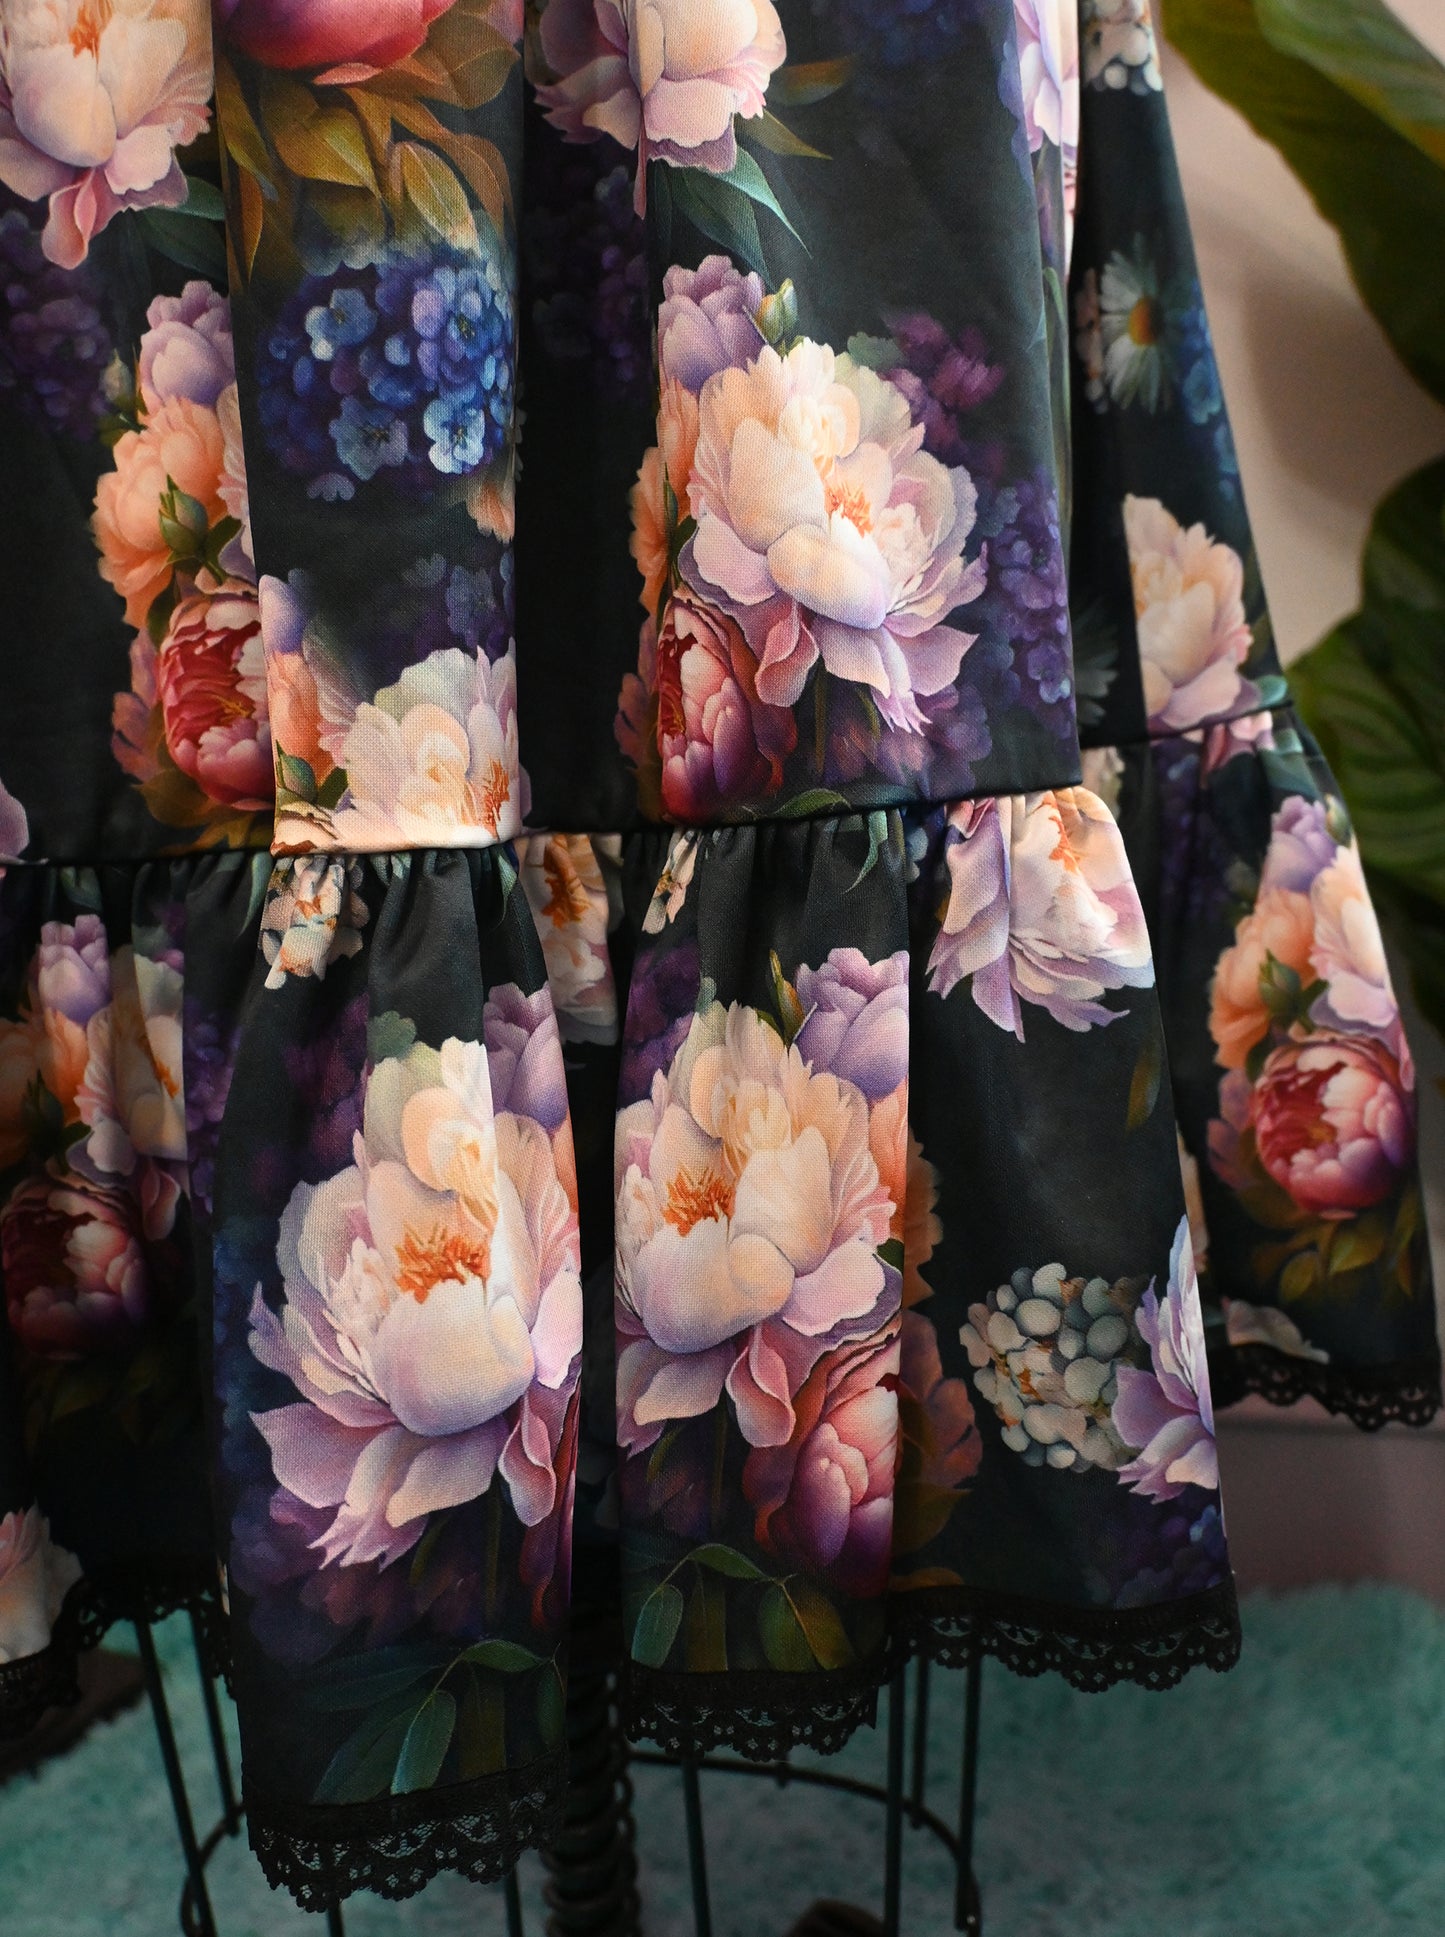 *PRE ORDER* Heidi Swing Dress in Boudoir Floral Print